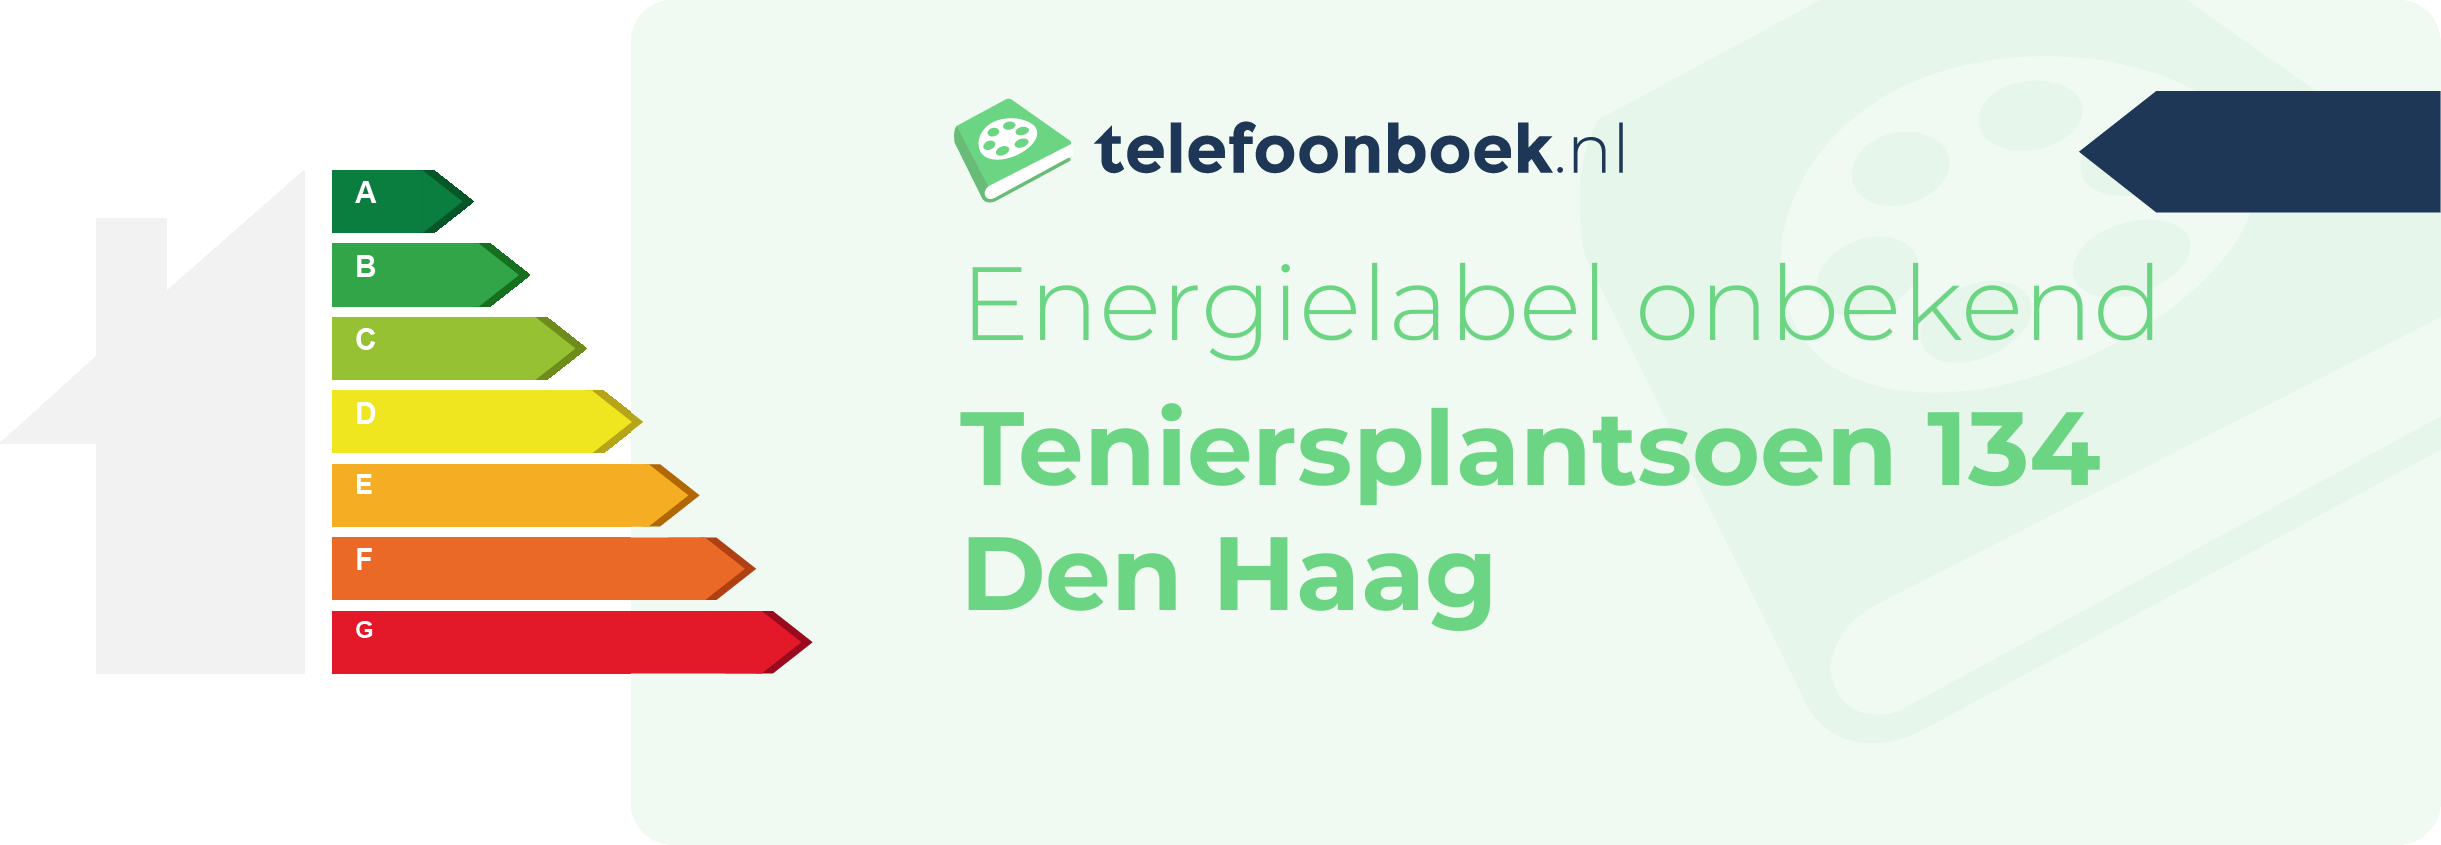 Energielabel Teniersplantsoen 134 Den Haag